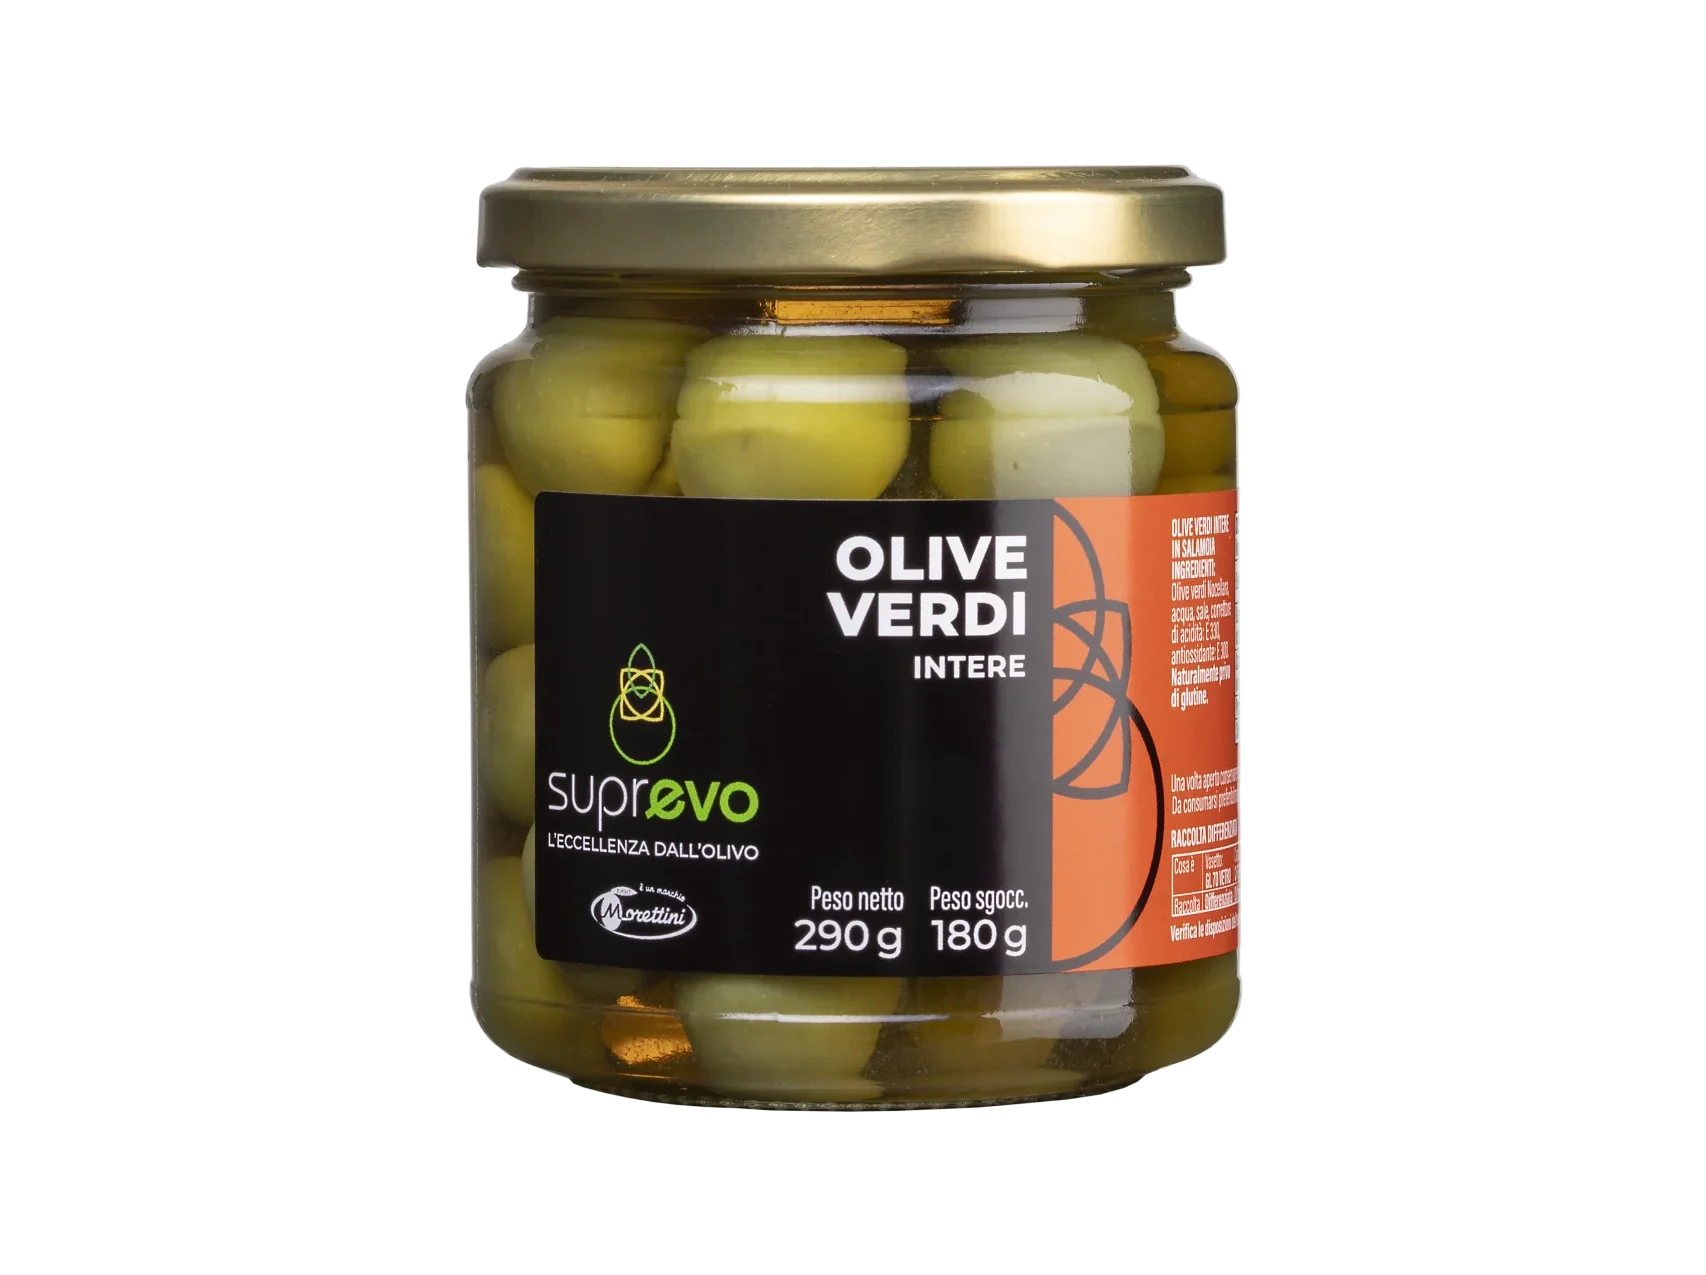 Olive verdi intere SuprEvo